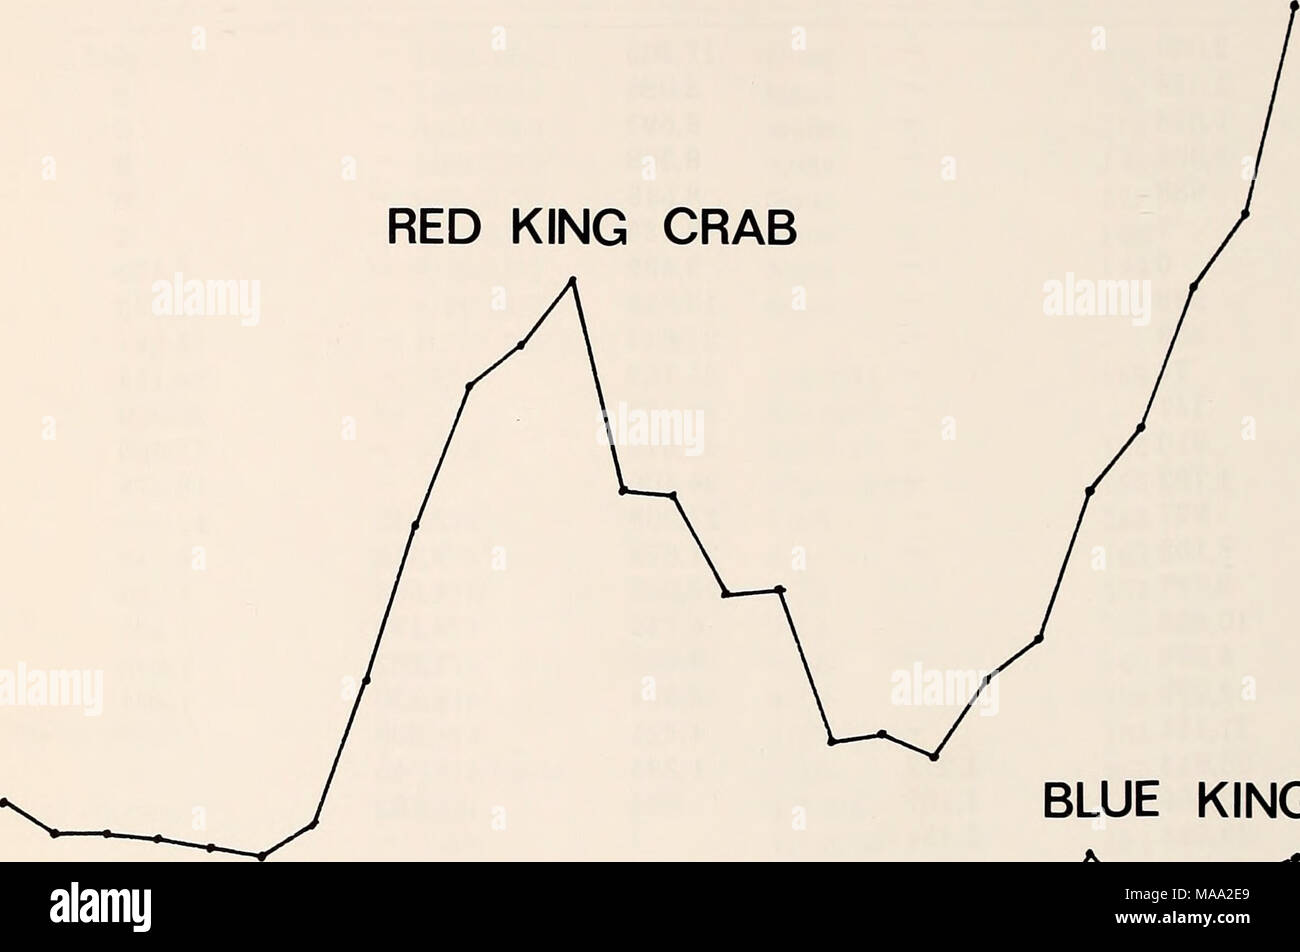 . Die östliche Beringmeer Regal: Ozeanographie und Ressourcen/bearbeitet von Donald W. Haube und John A. Calder. BLUE KING CRAB I R I I I I T F V. 54 56 58 60 62 64 66 68 70 72 74 76 78 Jahr Abbildung 61-6. All-Nation, die Anlandungen von Rot und Blau Königskrabben vom östlichen Bering Meer südlich von 58°. Fischereierzeugnisse ist fast das Doppelte von 1977 (vielleicht 40.000 Nettotonnen). King Crab Töpfe sind mit Stahlrahmen (oft Beton Betonstahl) und Nylon web gebaut. Töpfe in der Regel höchstens 227 kg Gewicht. Die neueste crab Schiffe können 160-200 Töpfe an Deck und viele Schiffe über 300 Töpfe. Während der 1977 Rot Stockfoto